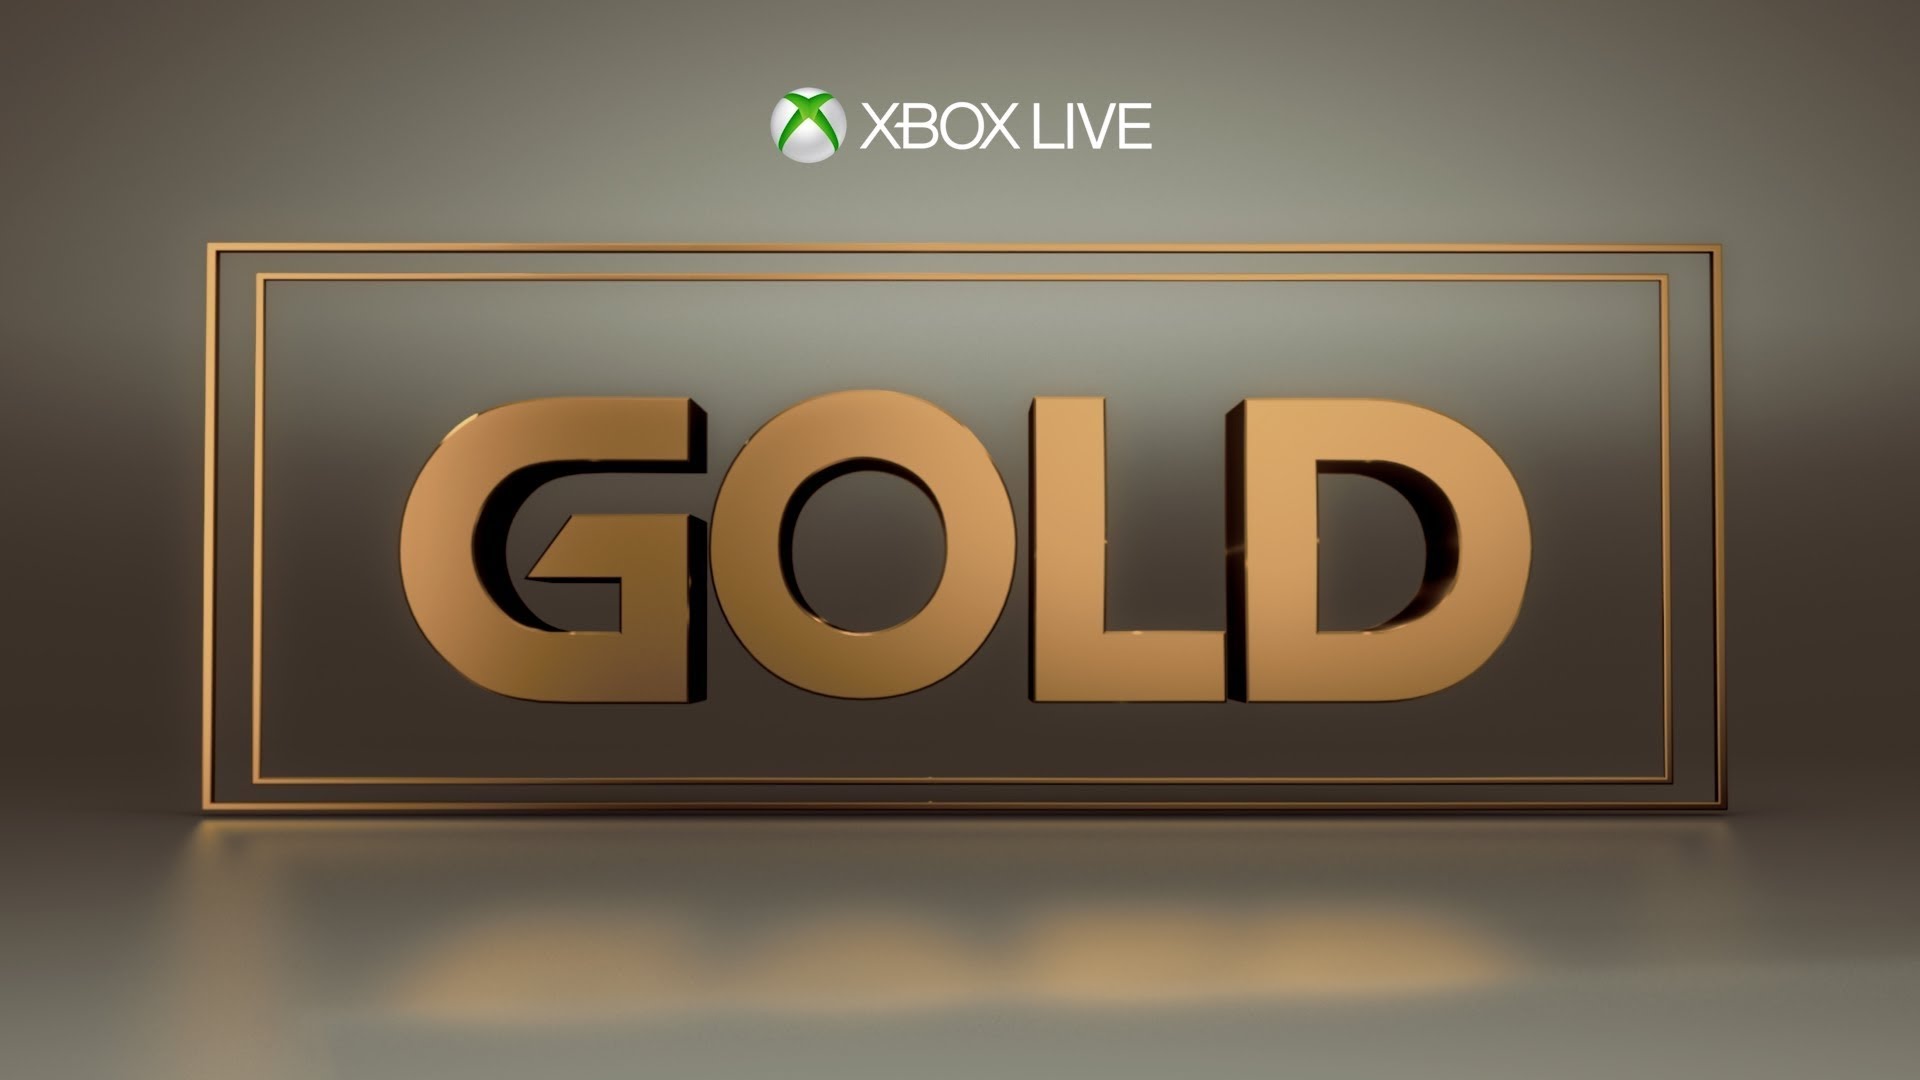 Подписка live gold. Xbox Live Gold. Хбокс лайв. Икс бокс лайв Голд. Xbox Live: Gold логотип.